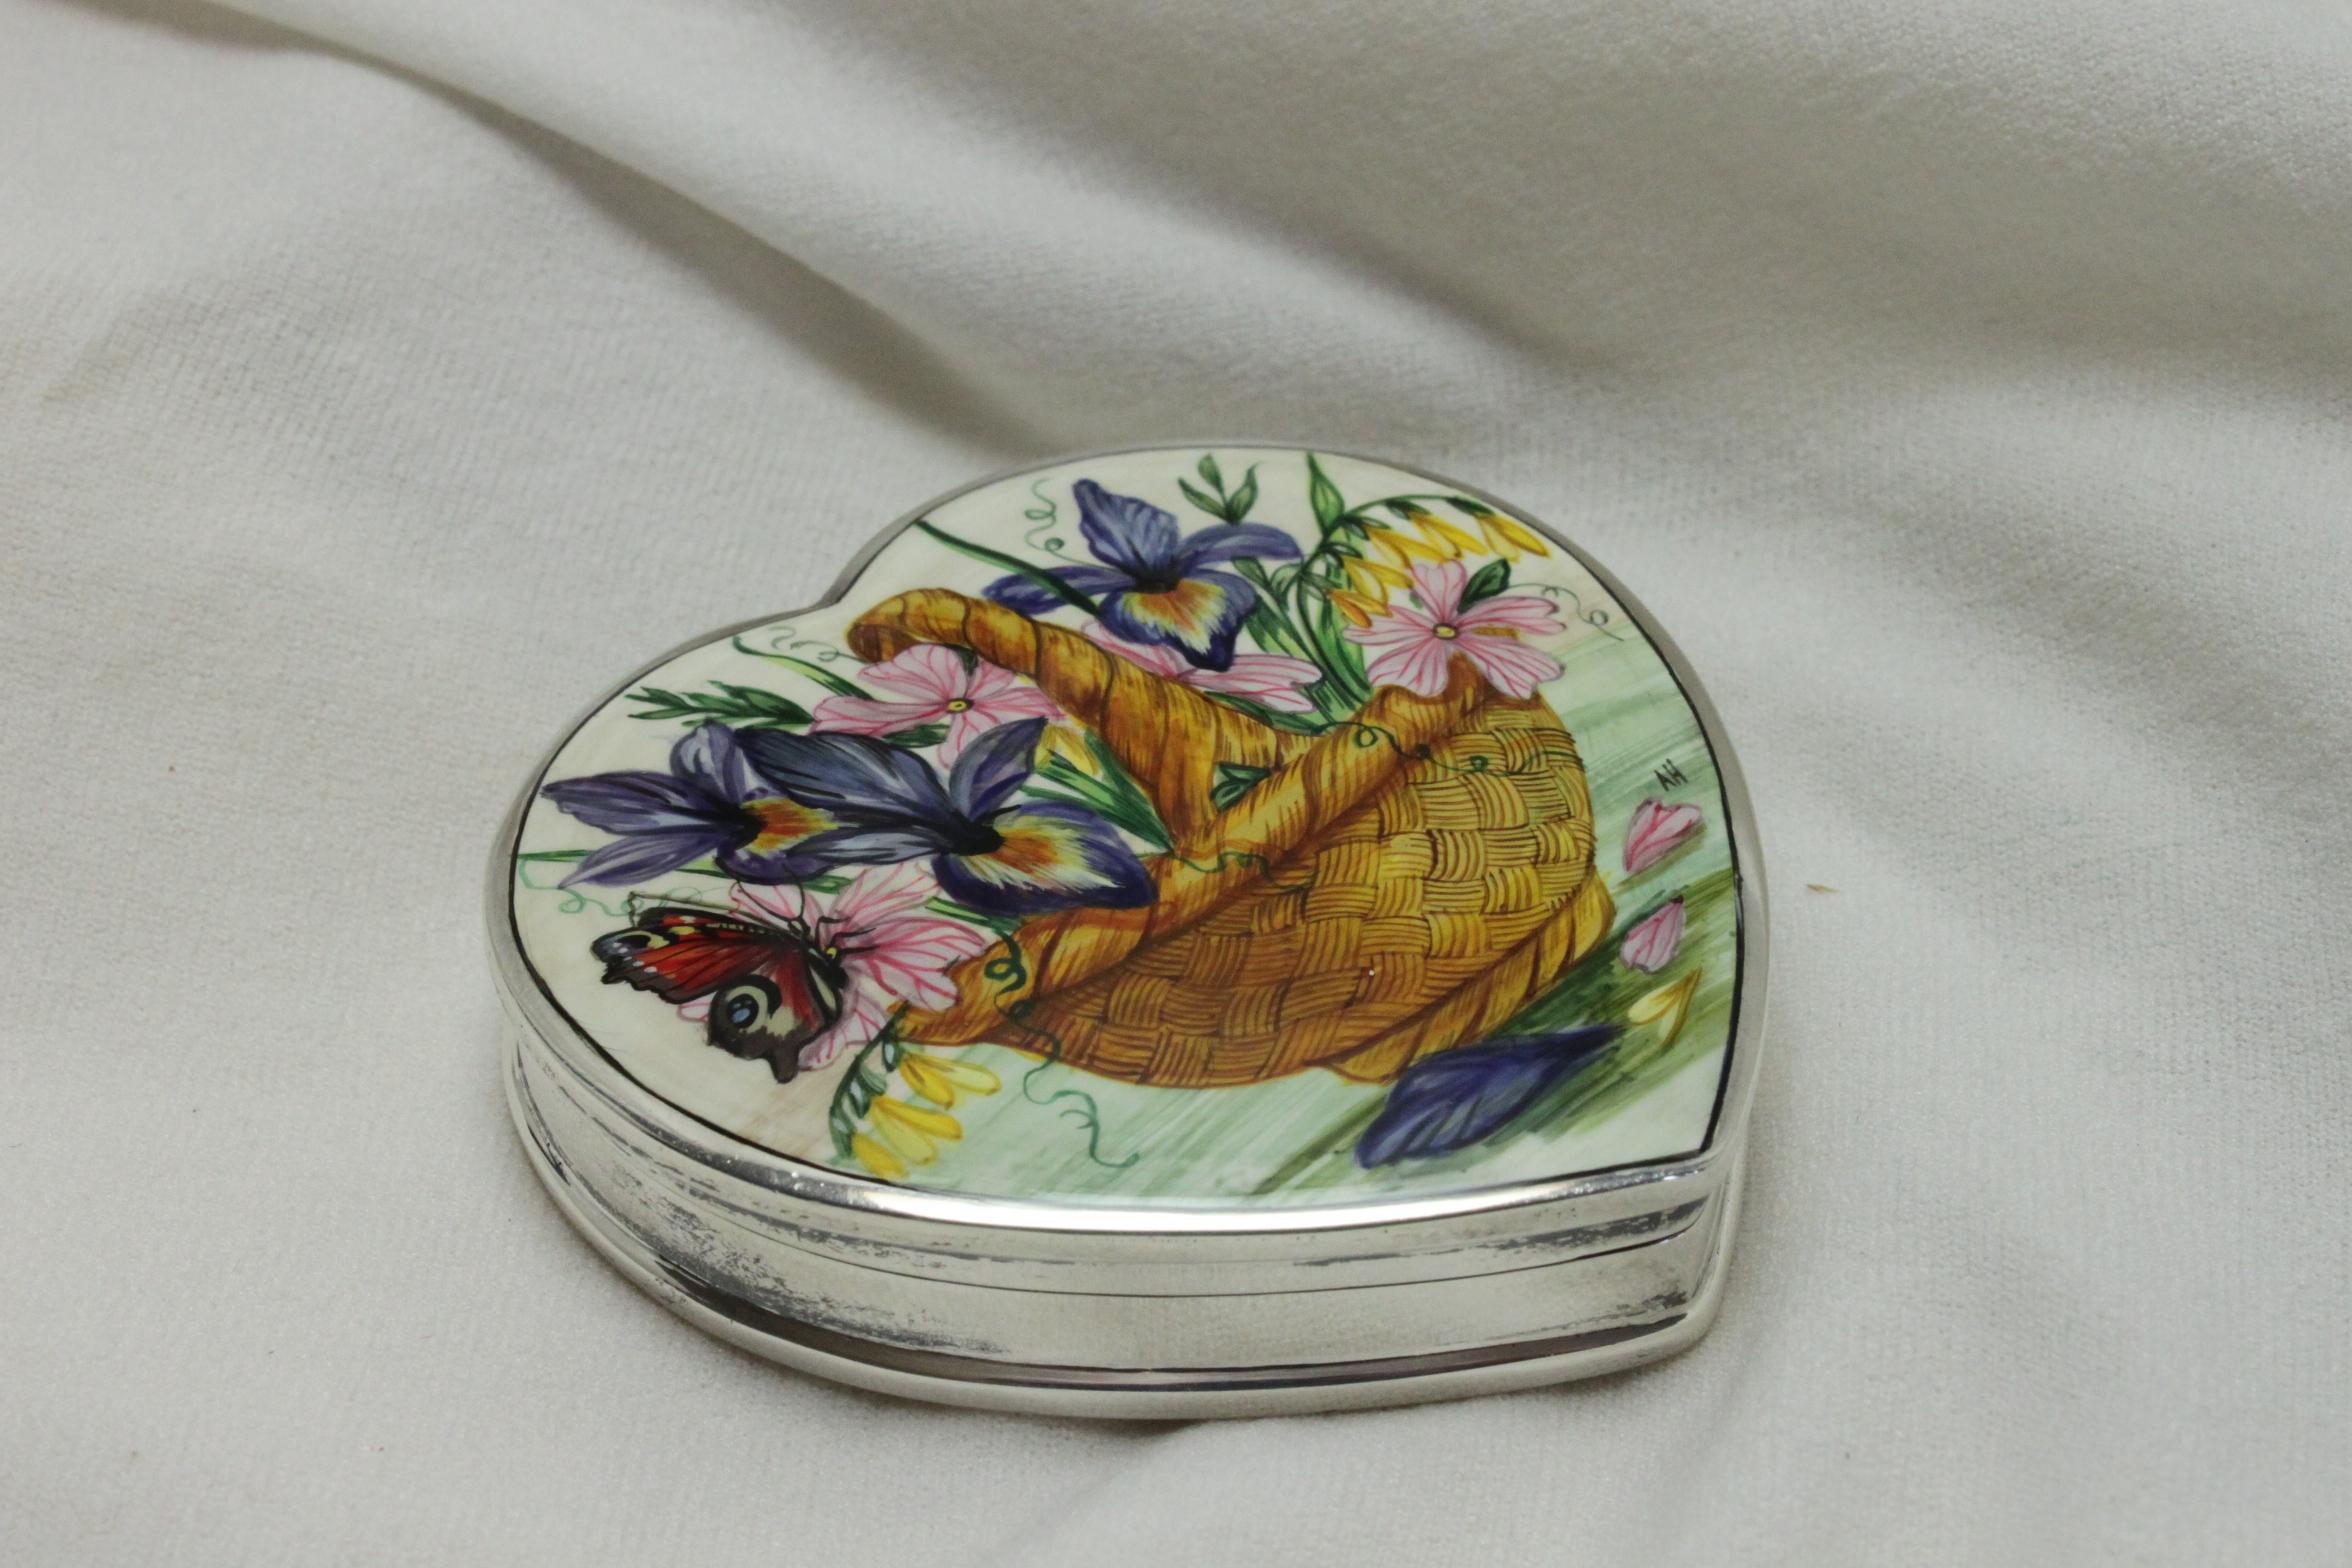 Dieses hübsche herzförmige Schmuckstück aus Sterlingsilber ist mit einer handgemalten Szene eines Weidenkorbs voller Blumen und einem Schmetterling, der auf einer der Blüten ruht, verziert. Das Gemälde ist mit AH signiert. Es misst 66 mm in der